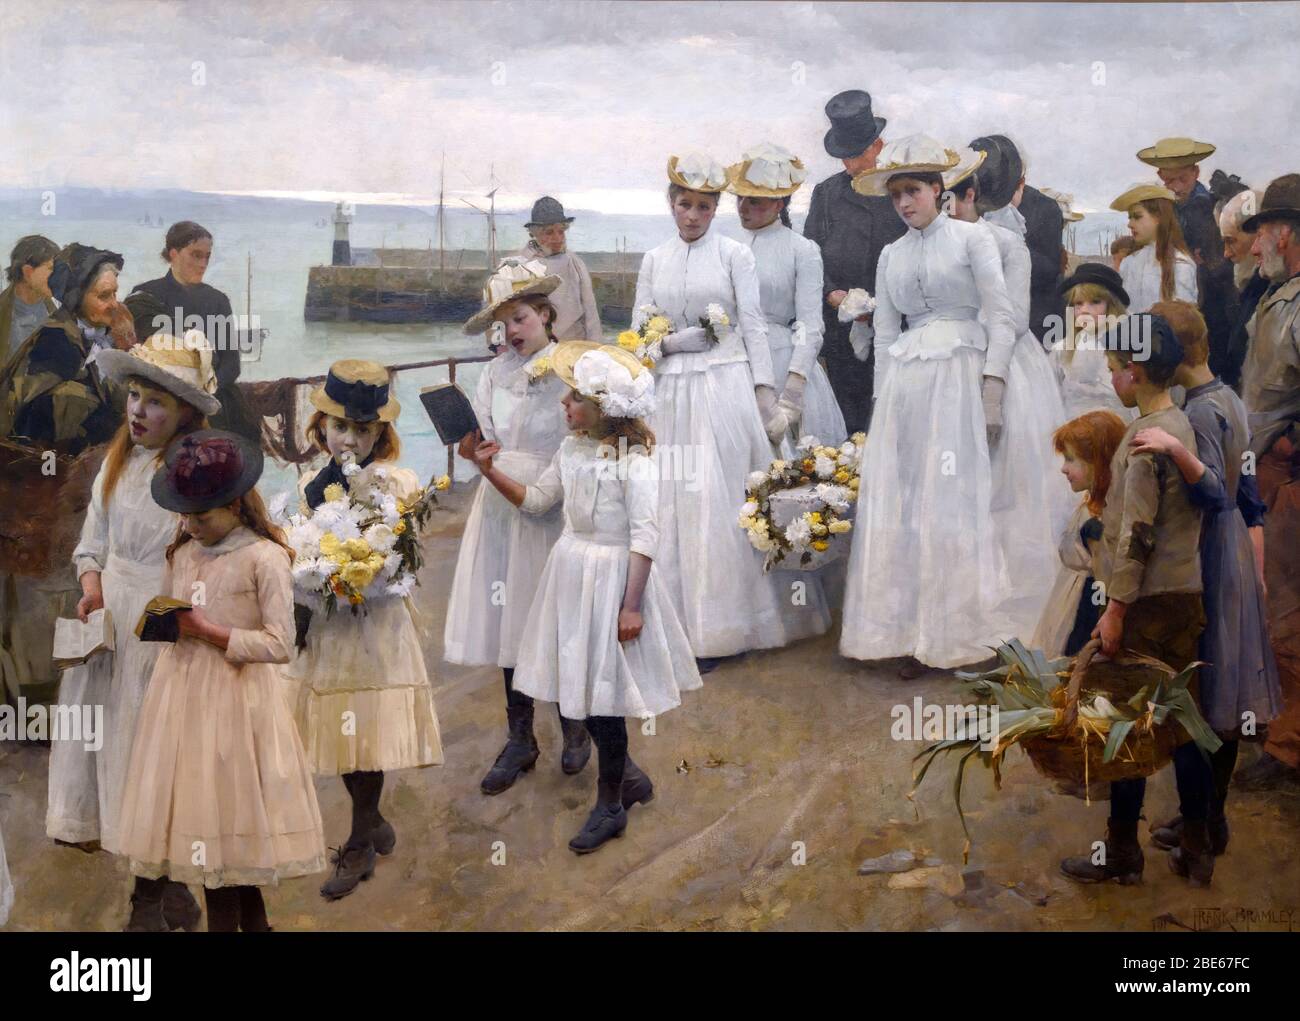 Car tel est le Royaume des cieux par Frank Bramley (1857-1915), huile sur toile, 1891 Banque D'Images